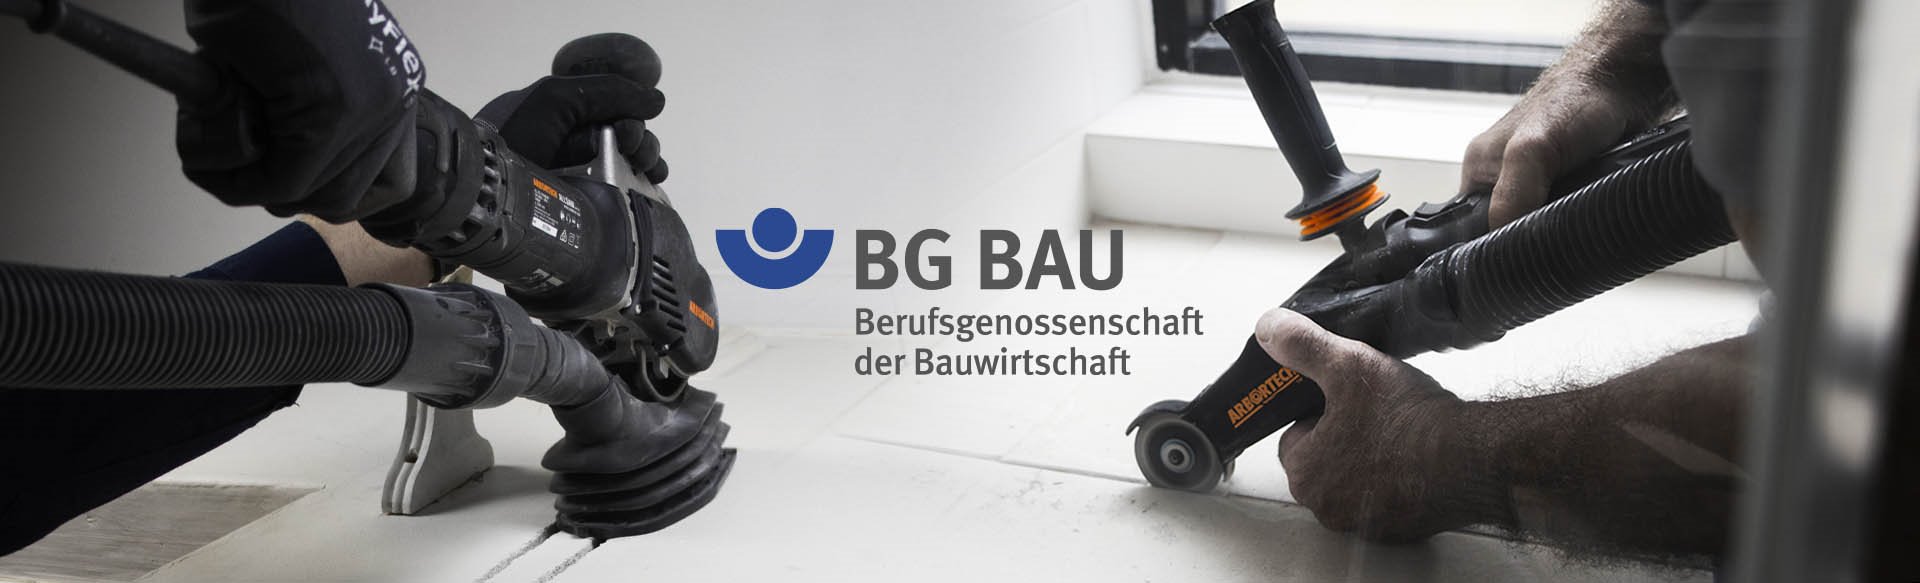 ALLSAW und Mini Grinder Trade von BG BAU gefördert